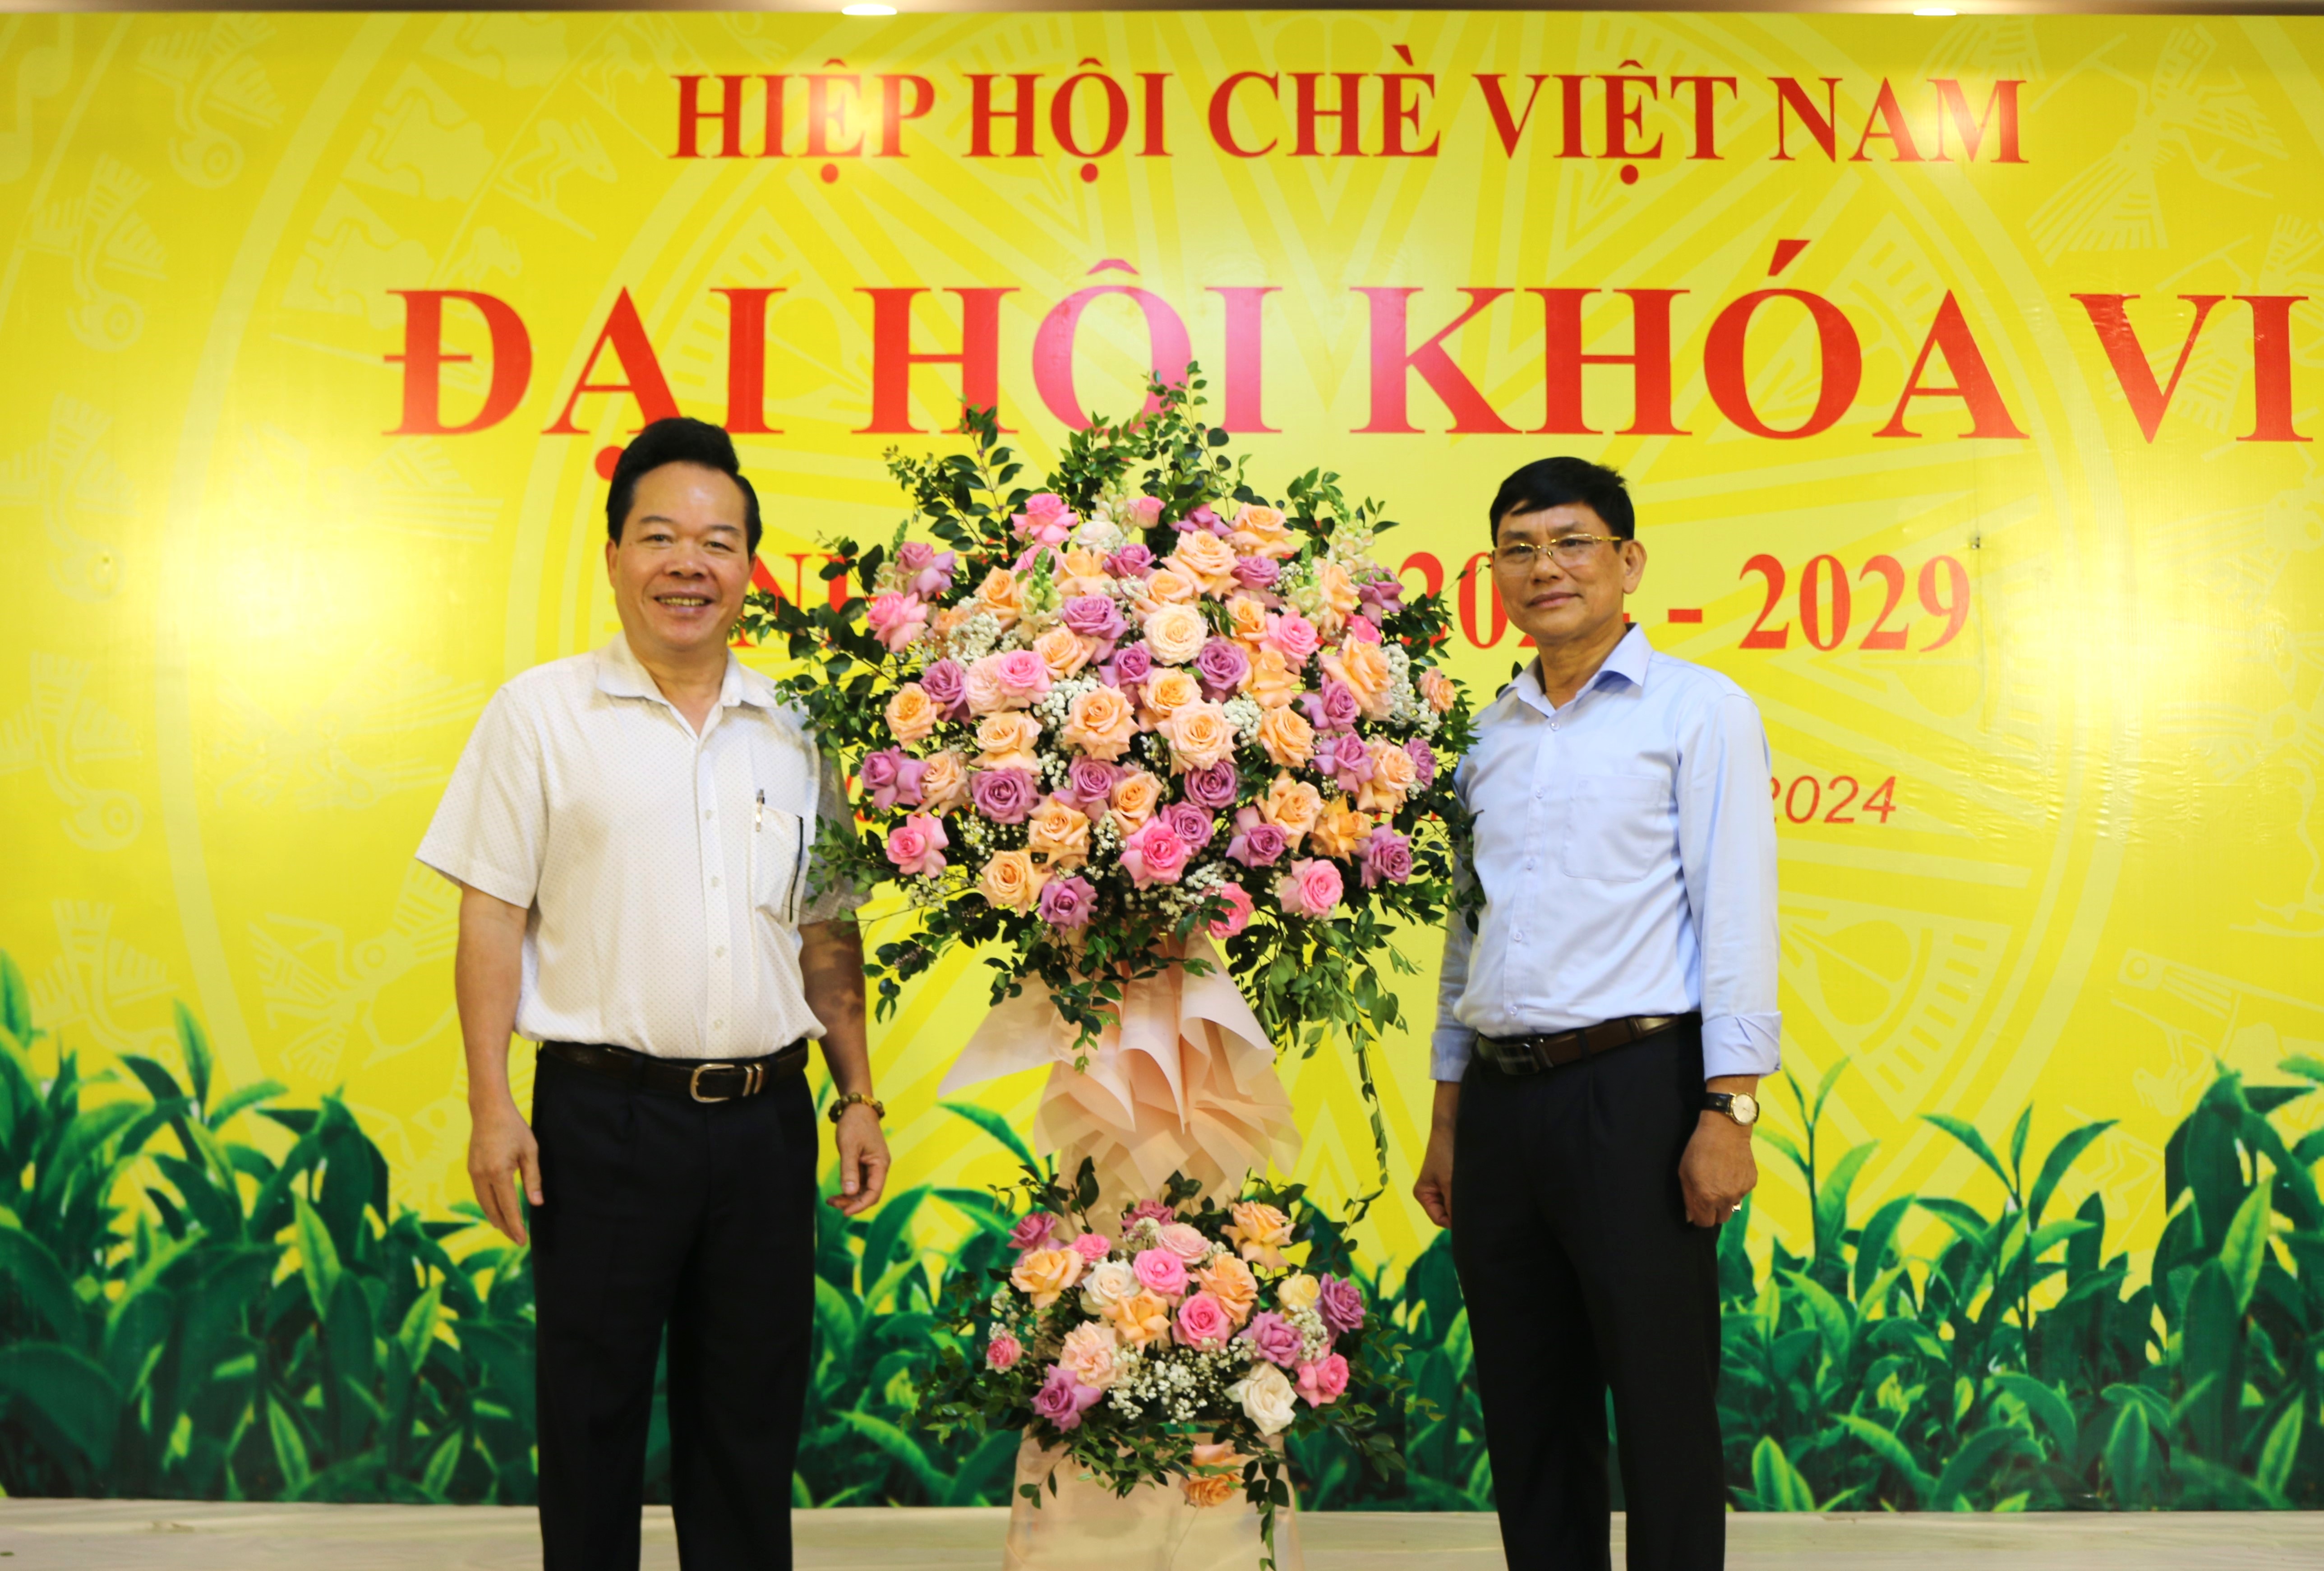 Ông Nguyễn Quốc Hùng - Tổng Biên tập Tạp chí Kinh tế và Đồ uống tặng hoa chúc mừng Tân Chủ tịch Hiệp hội Chè Việt Nam